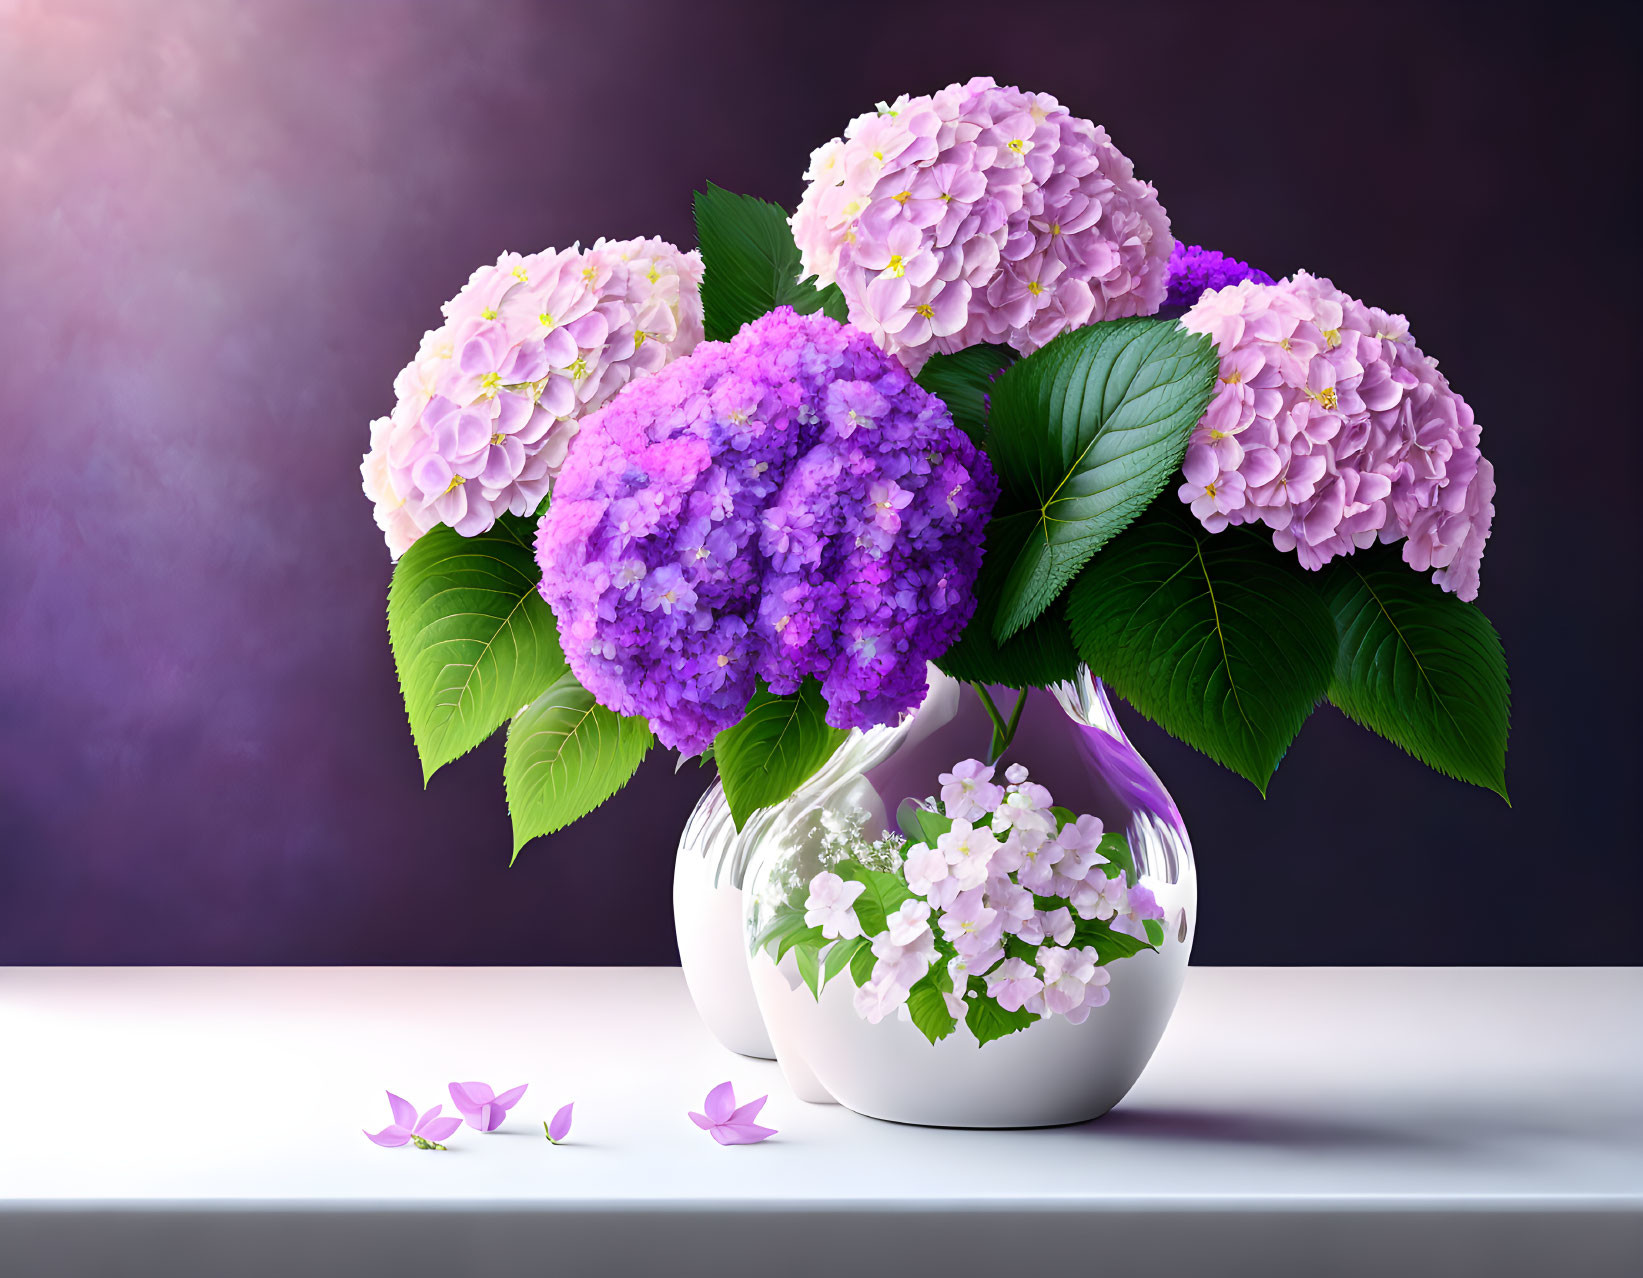 Purple and Pink Hydrangea Bouquet in White Vase on Dark Purple Background